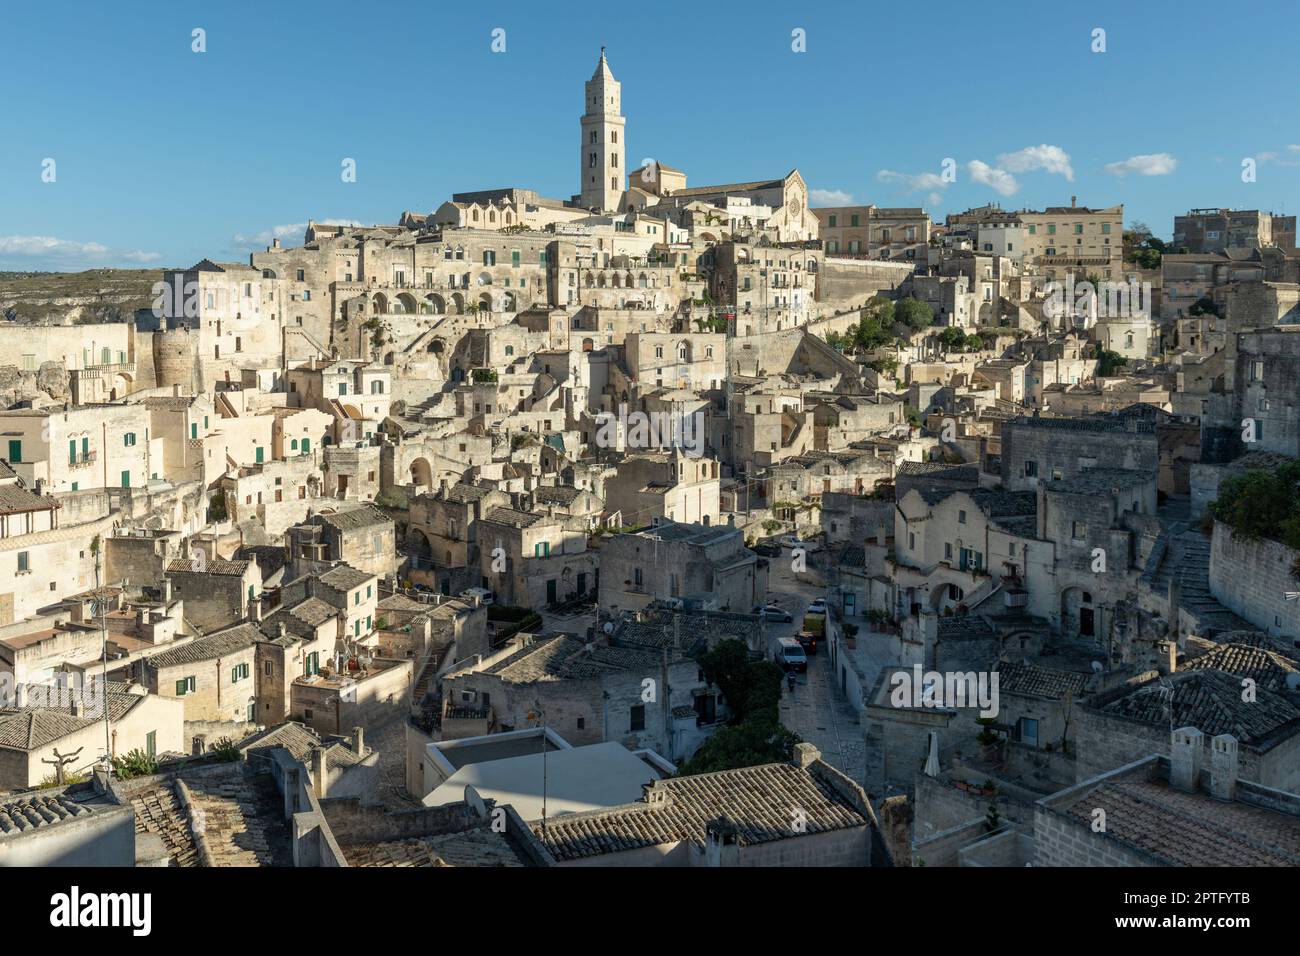 La ville historique de Matera dans le sud de l'Italie Banque D'Images